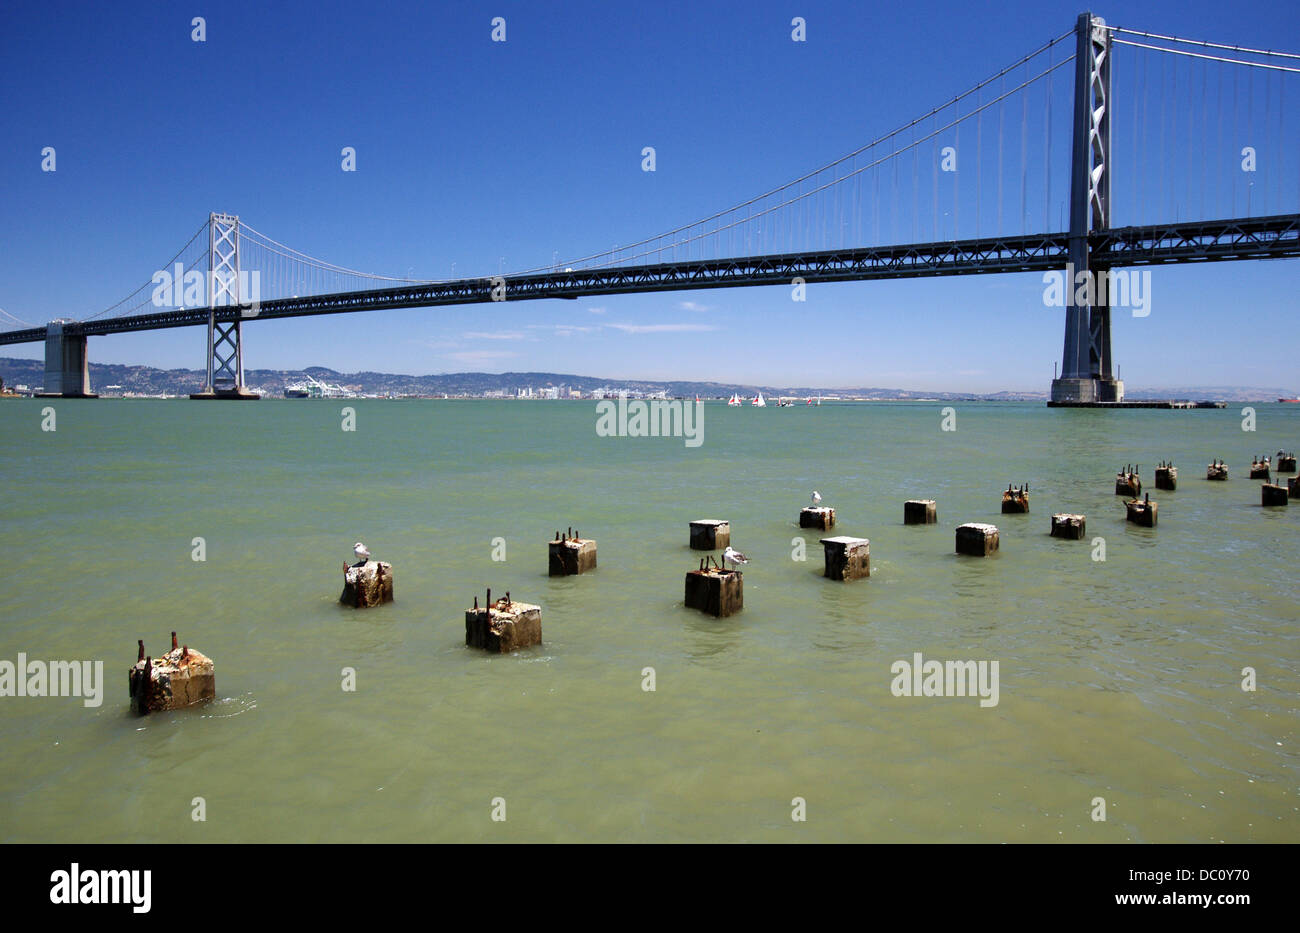 San Francisco–Oakland Bay Bridge as seen from the Embarcadero - San Francisco, USA Stock Photo